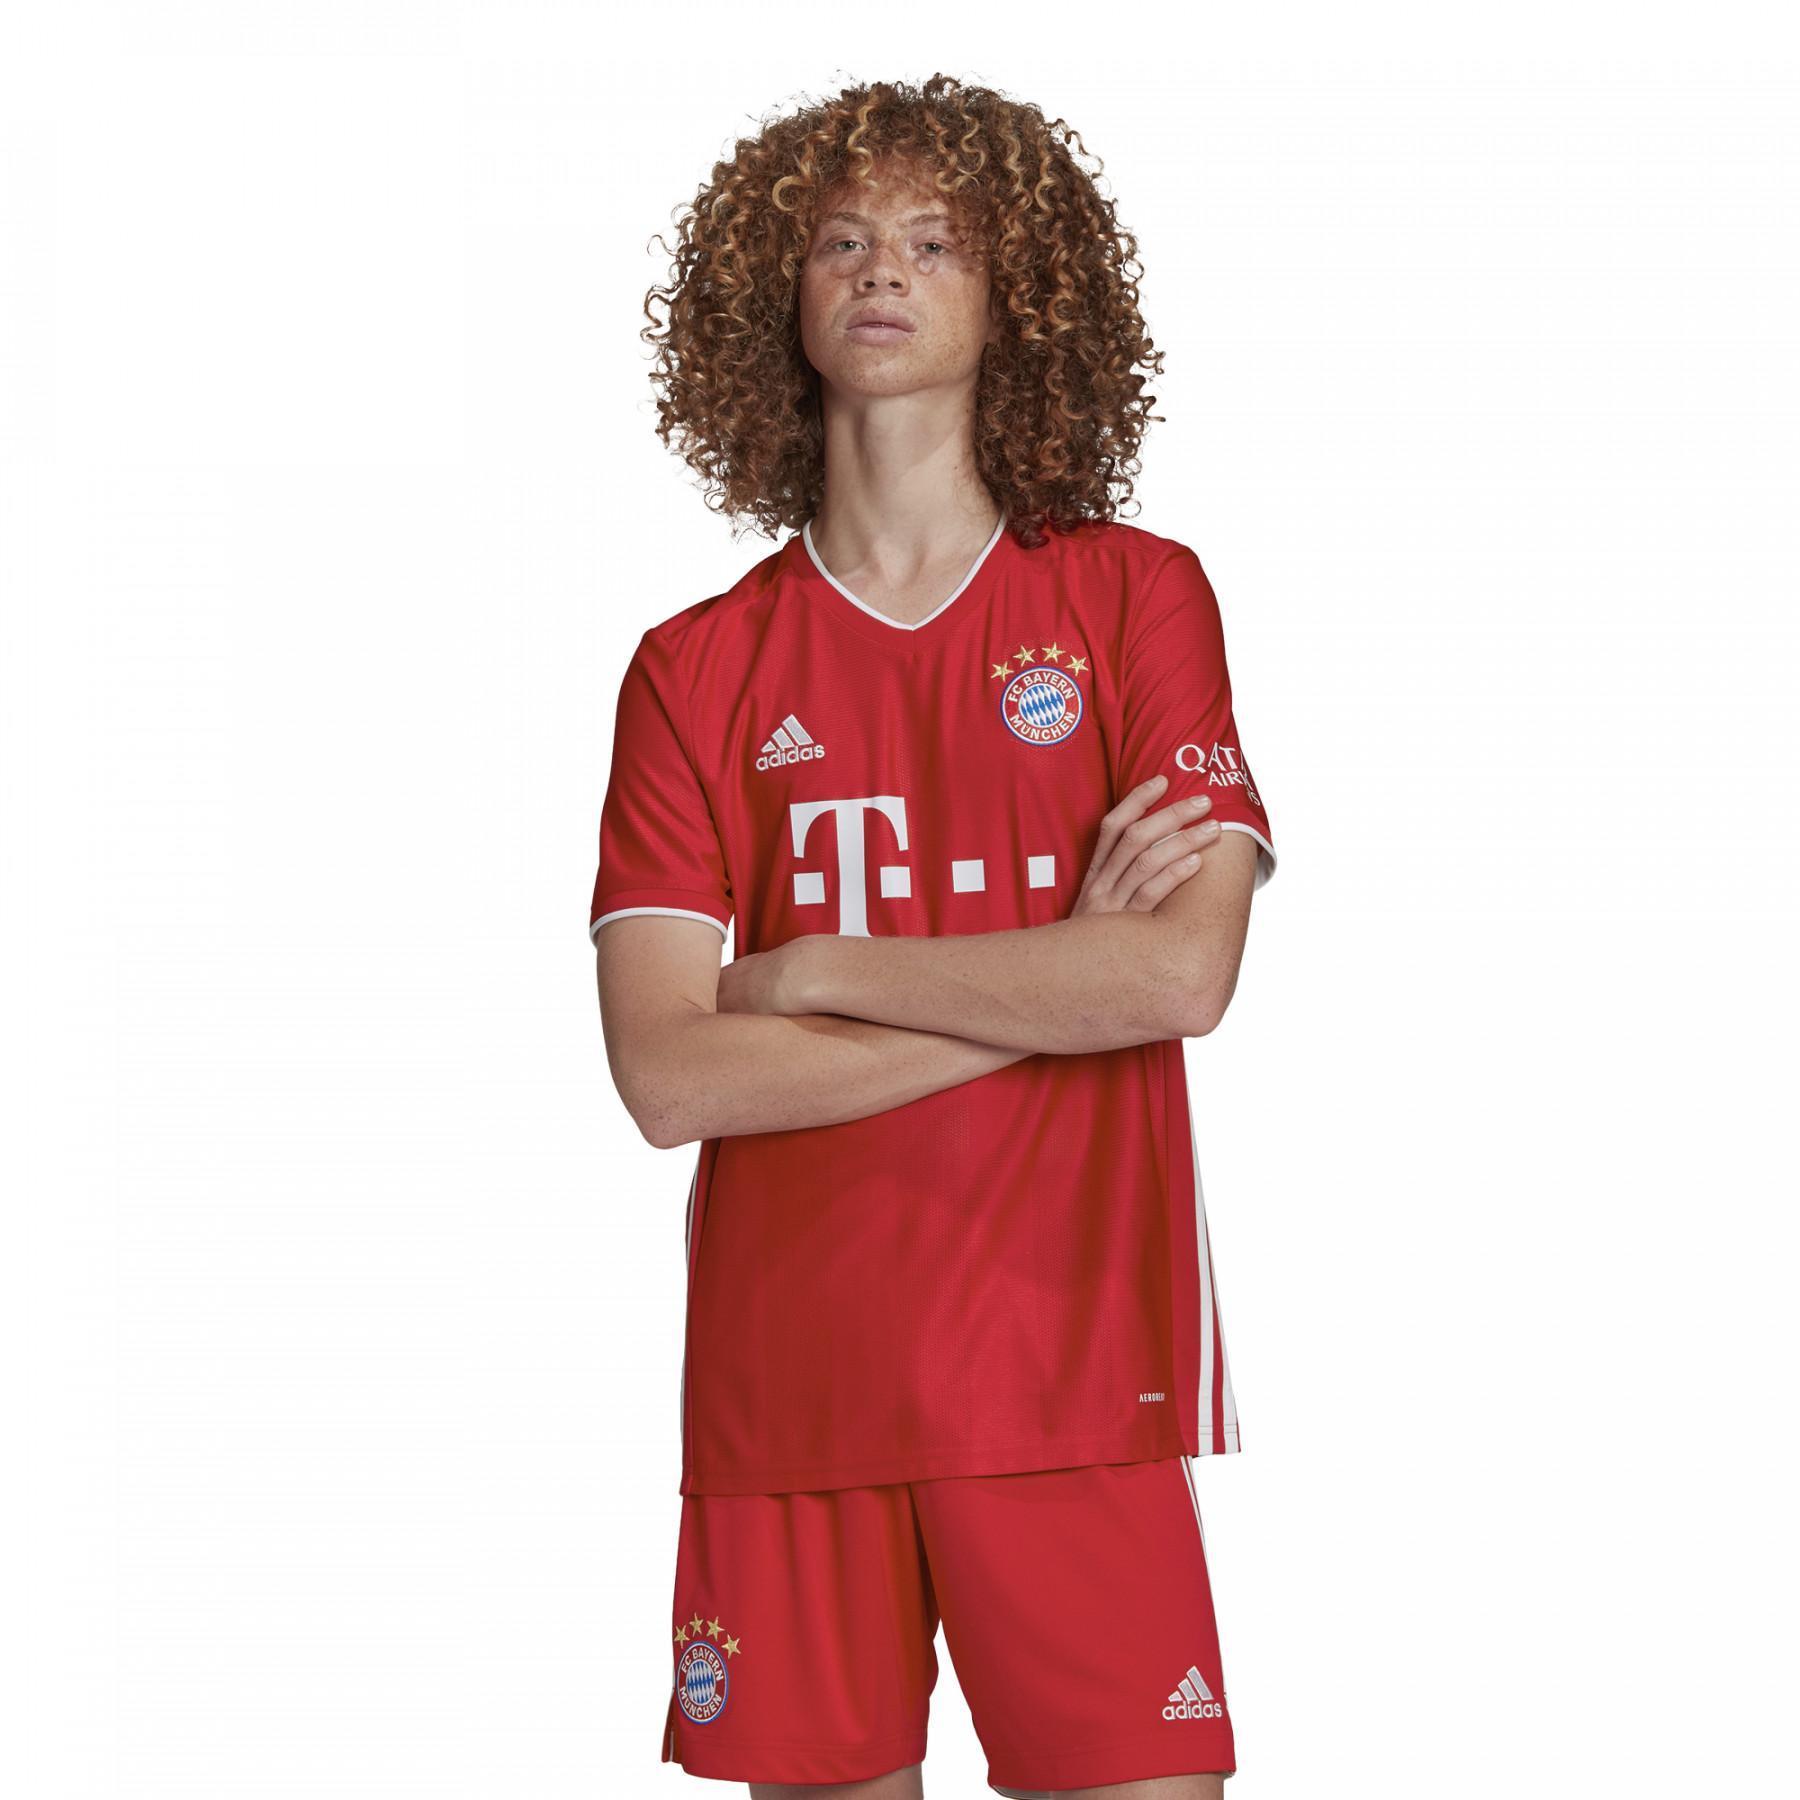 Maillot Domicile Bayern Munich 2020/21